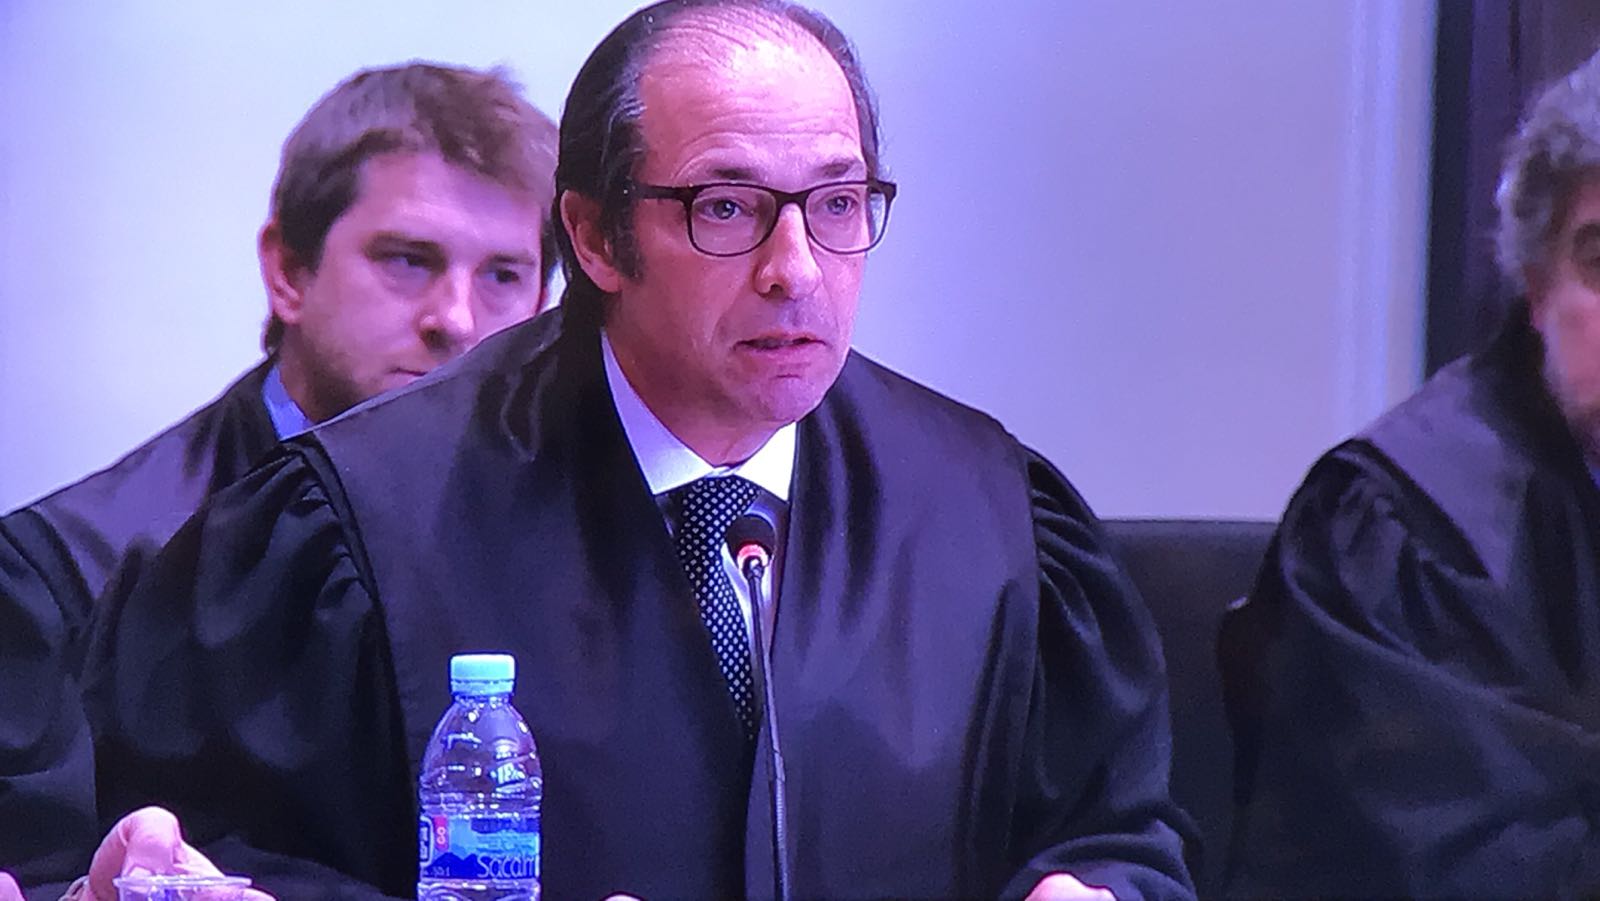 El abogado el Ortega carga contra los jueces que han aceptado juzgar Mas, Ortega y Rigau